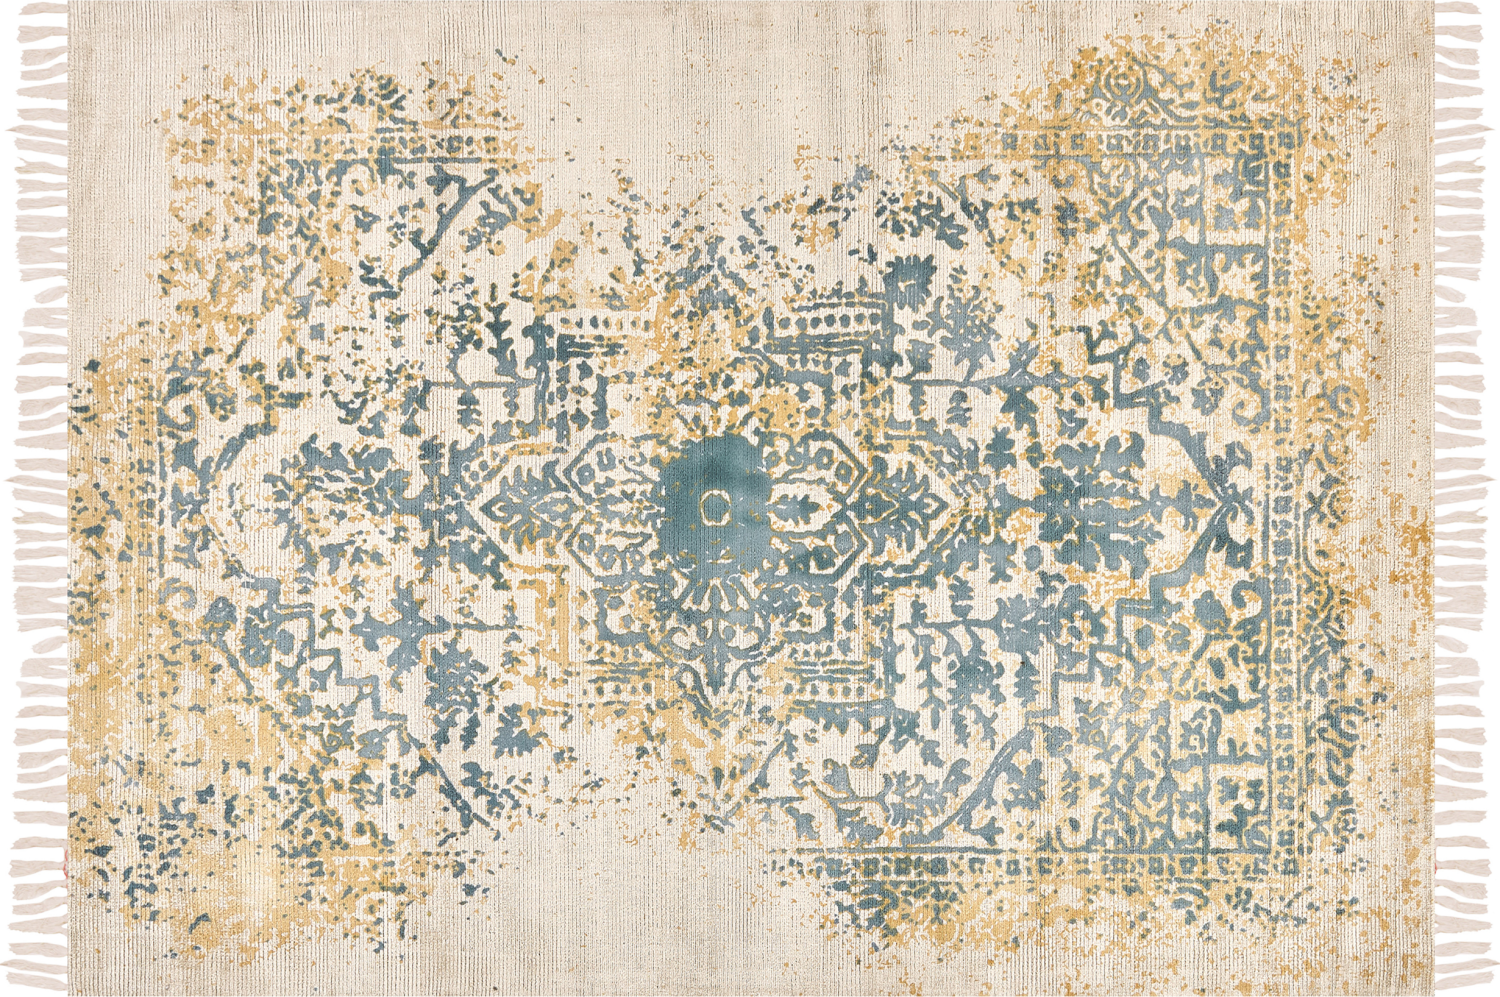 Teppich Viskose senfgelb grün 140 x 200 cm orientalisches Muster Kurzflor BOYALI Bild 1